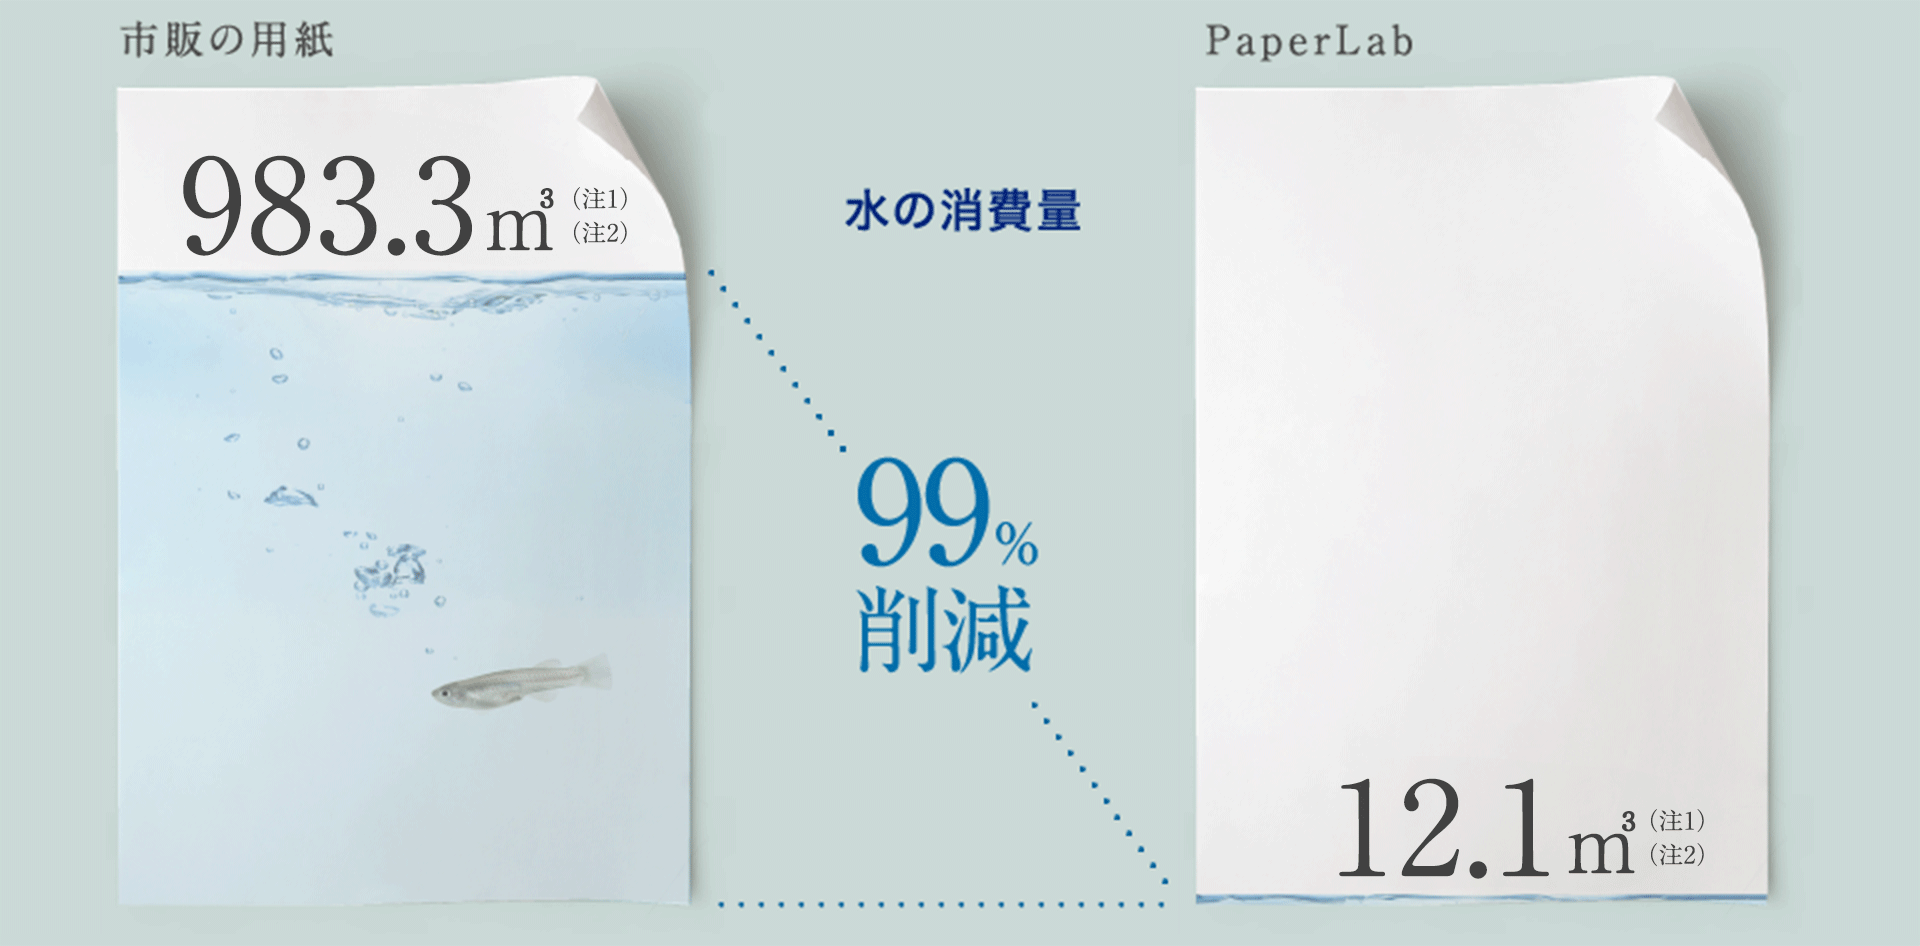 市販の用紙 7,759m³（注2） 水の消費量99&削減 PaperLab 71m³（注1）